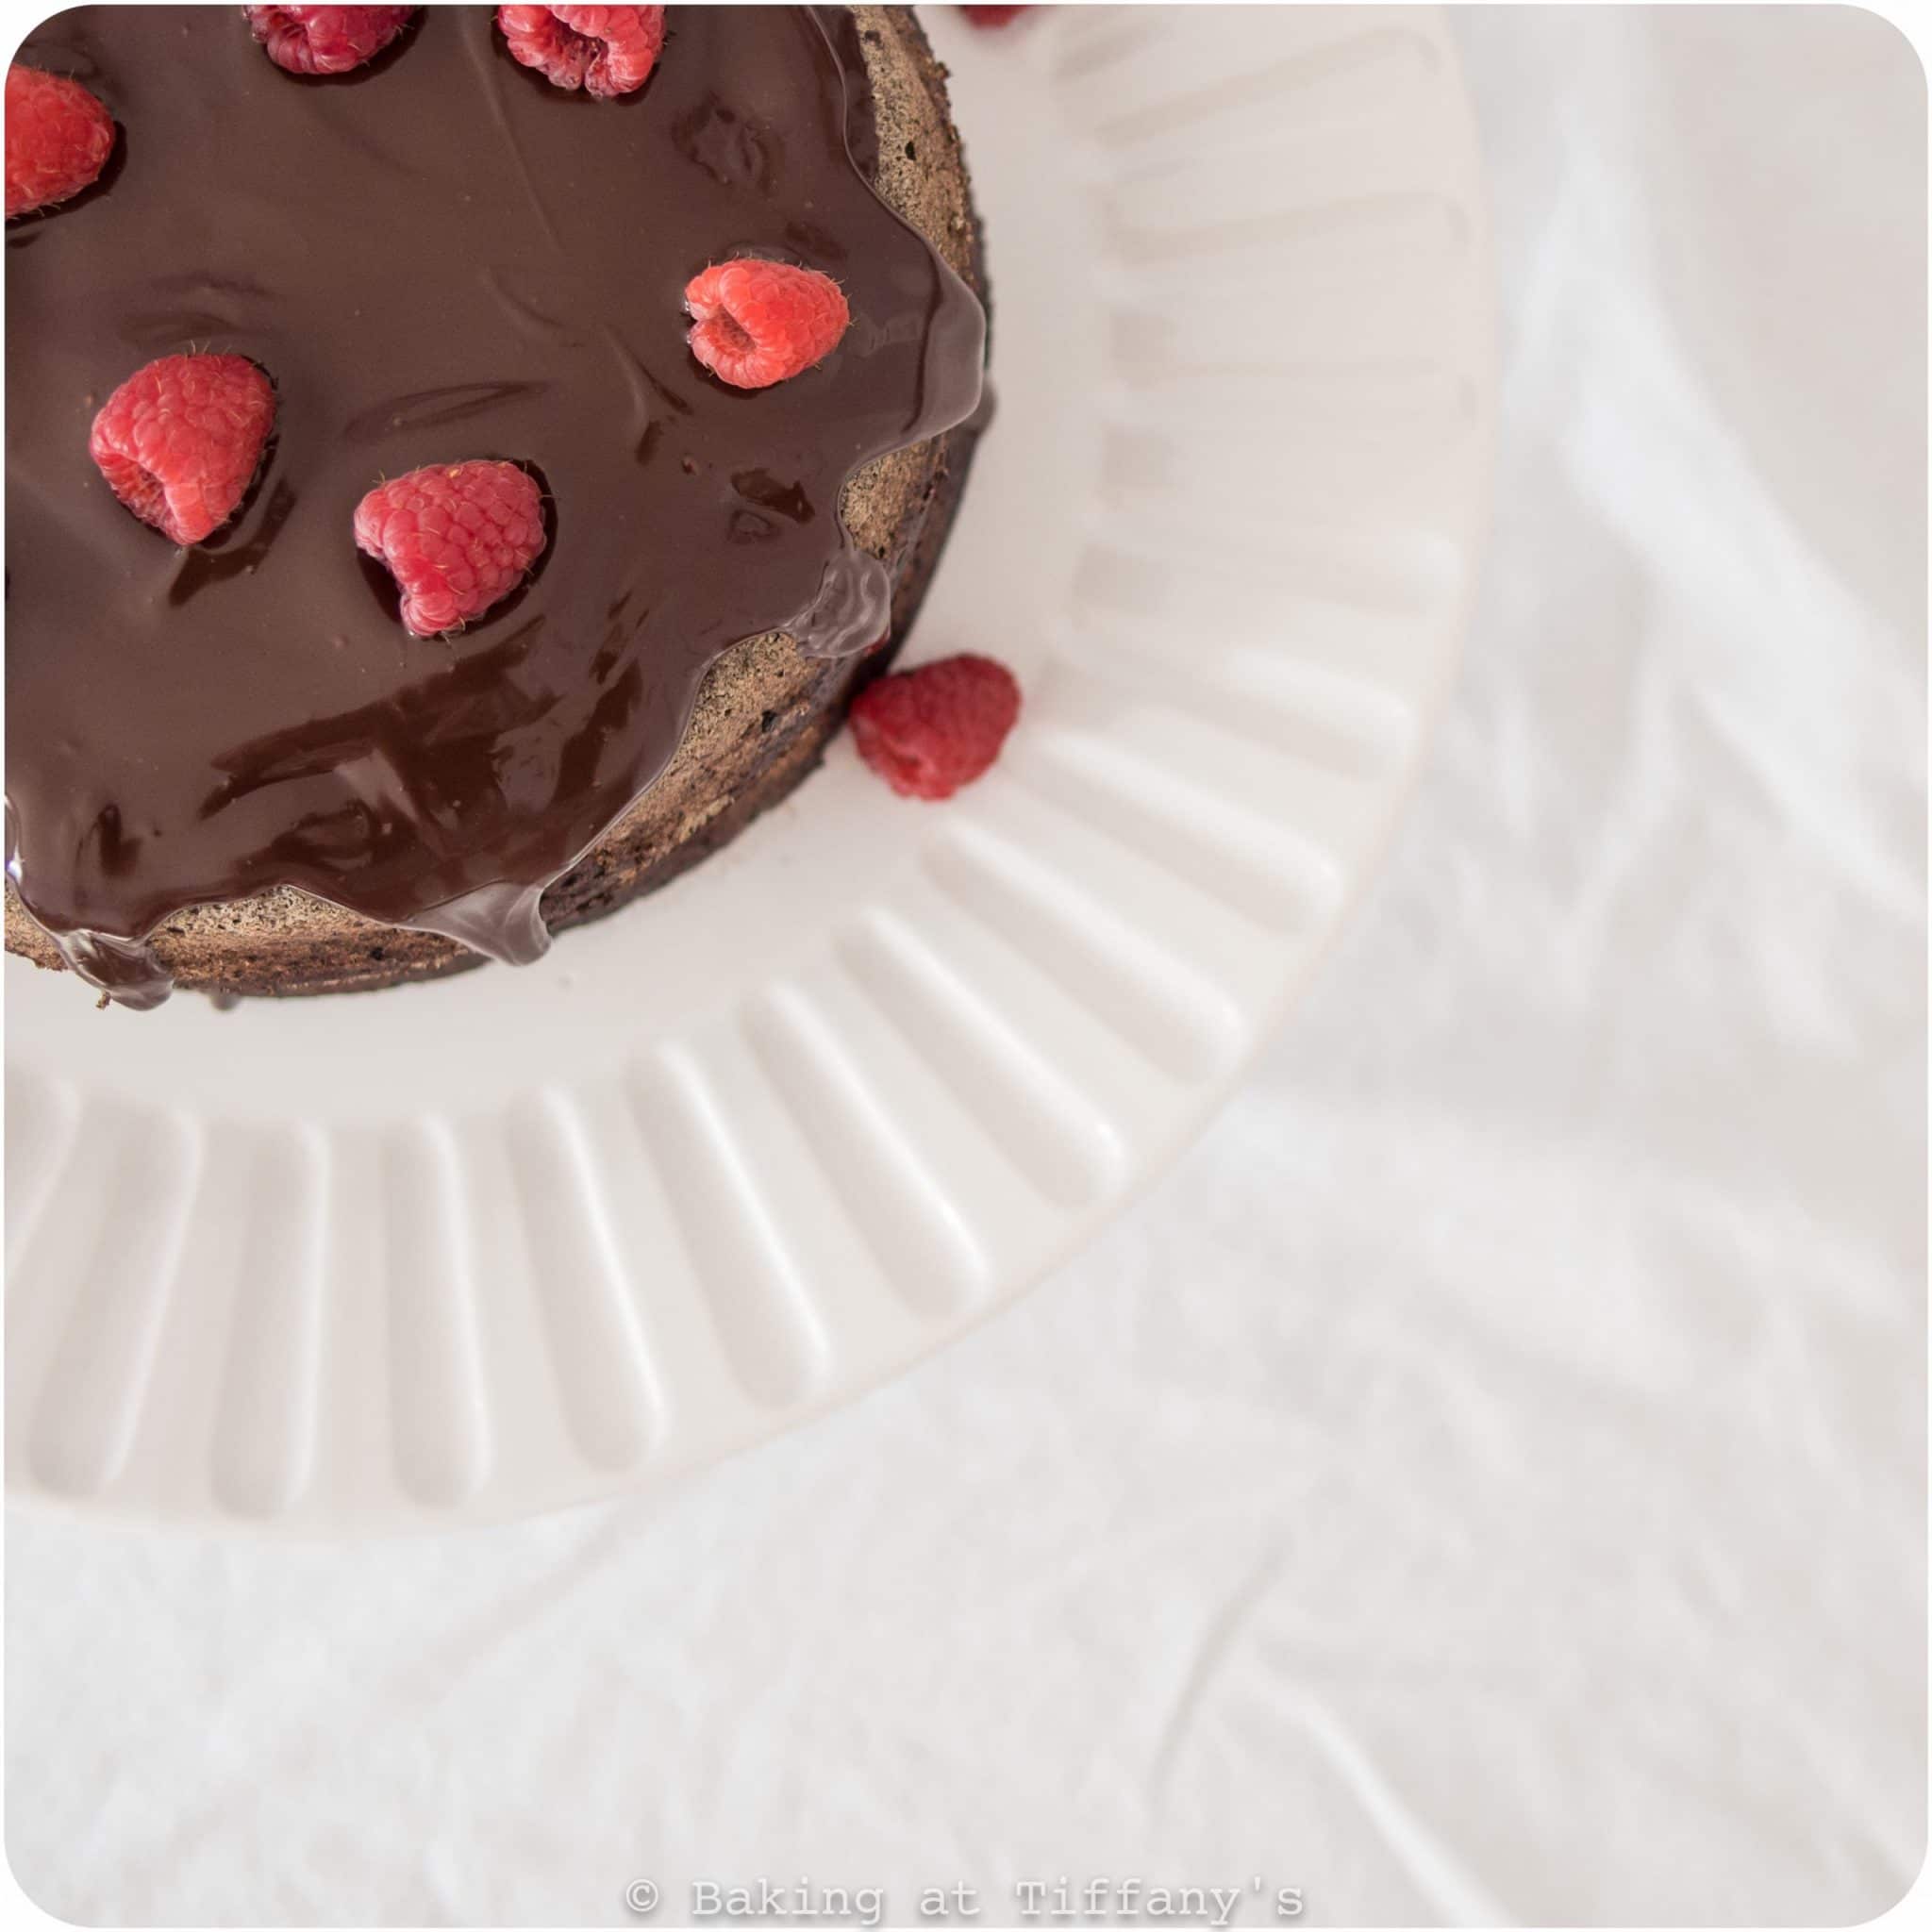 Chocolate Raspberry Buckwheat Chiffon Cake - bakingattiffanys.com